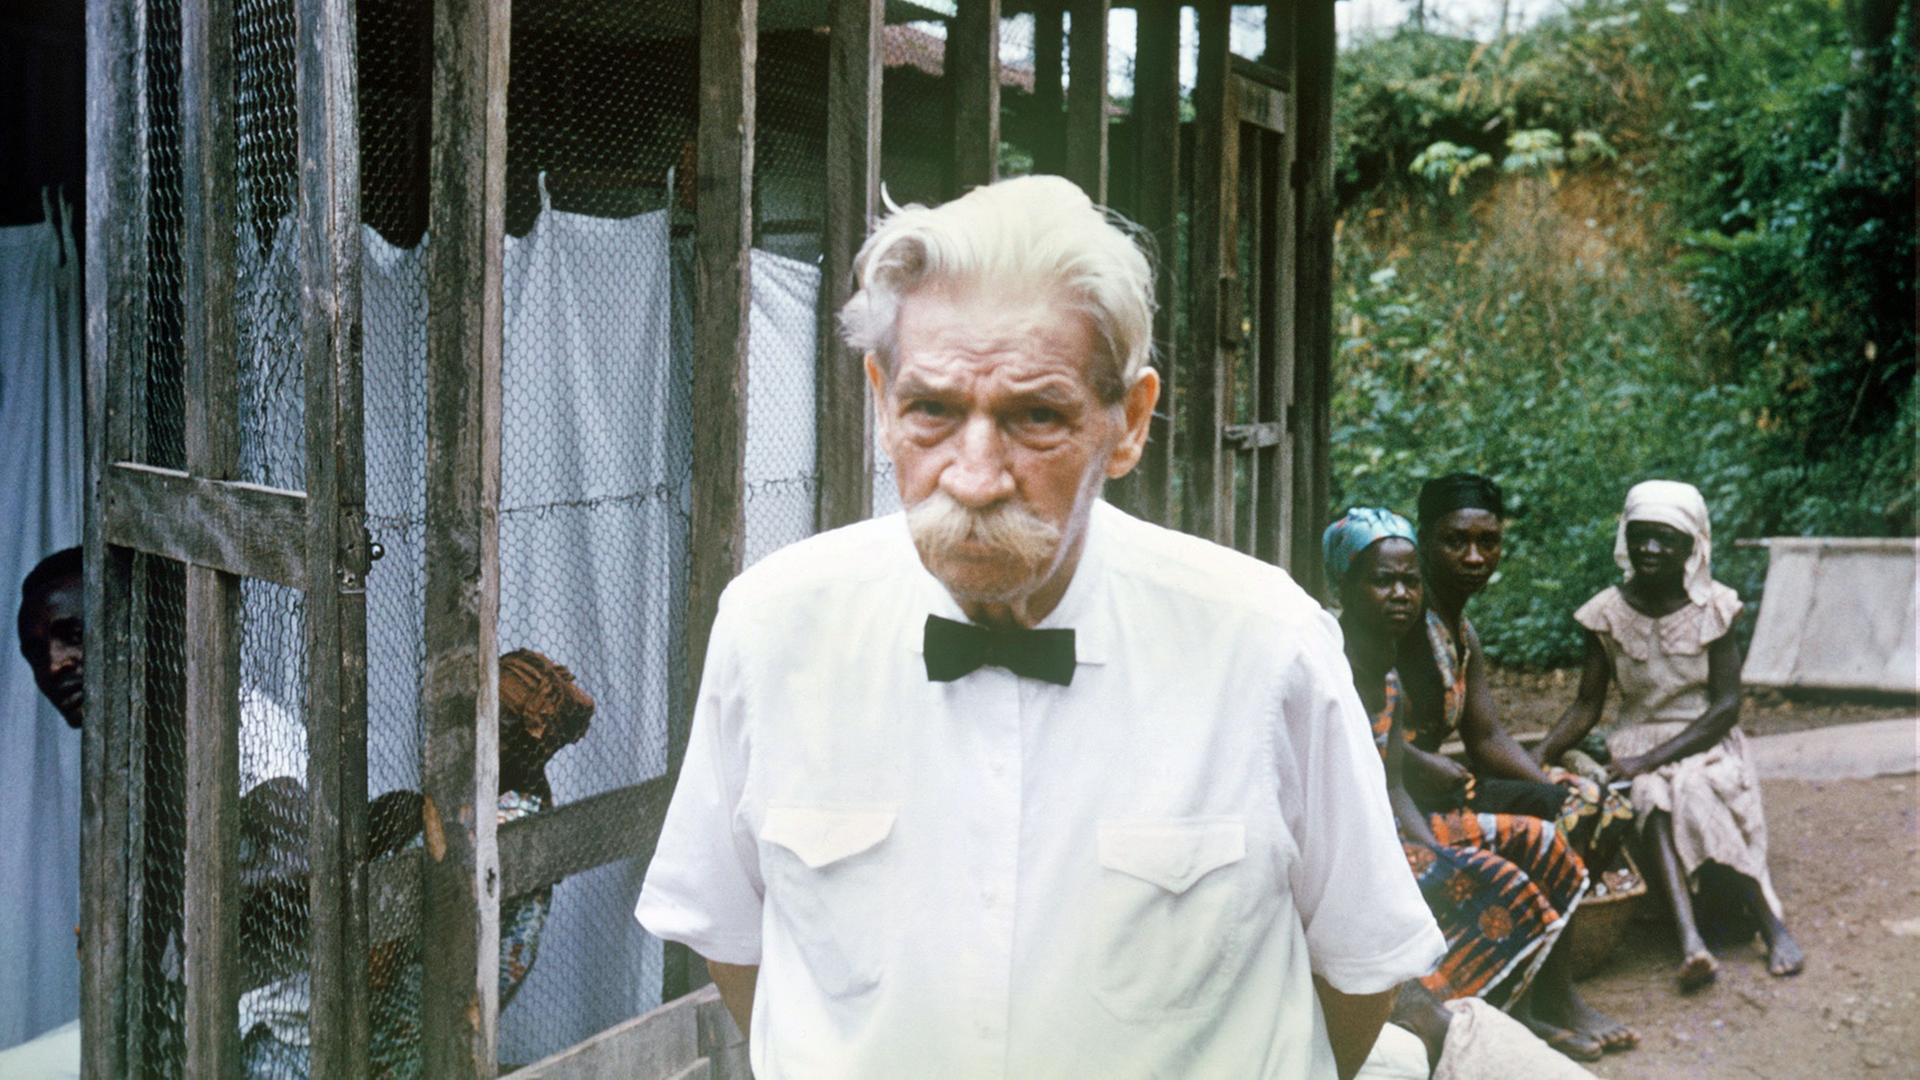 Älterer Mann mit Schnauzbart und einem weißen Hemd in einem afrikanischen Krankenhaus, im Hintergrund sitzen afrikanische Menschen 